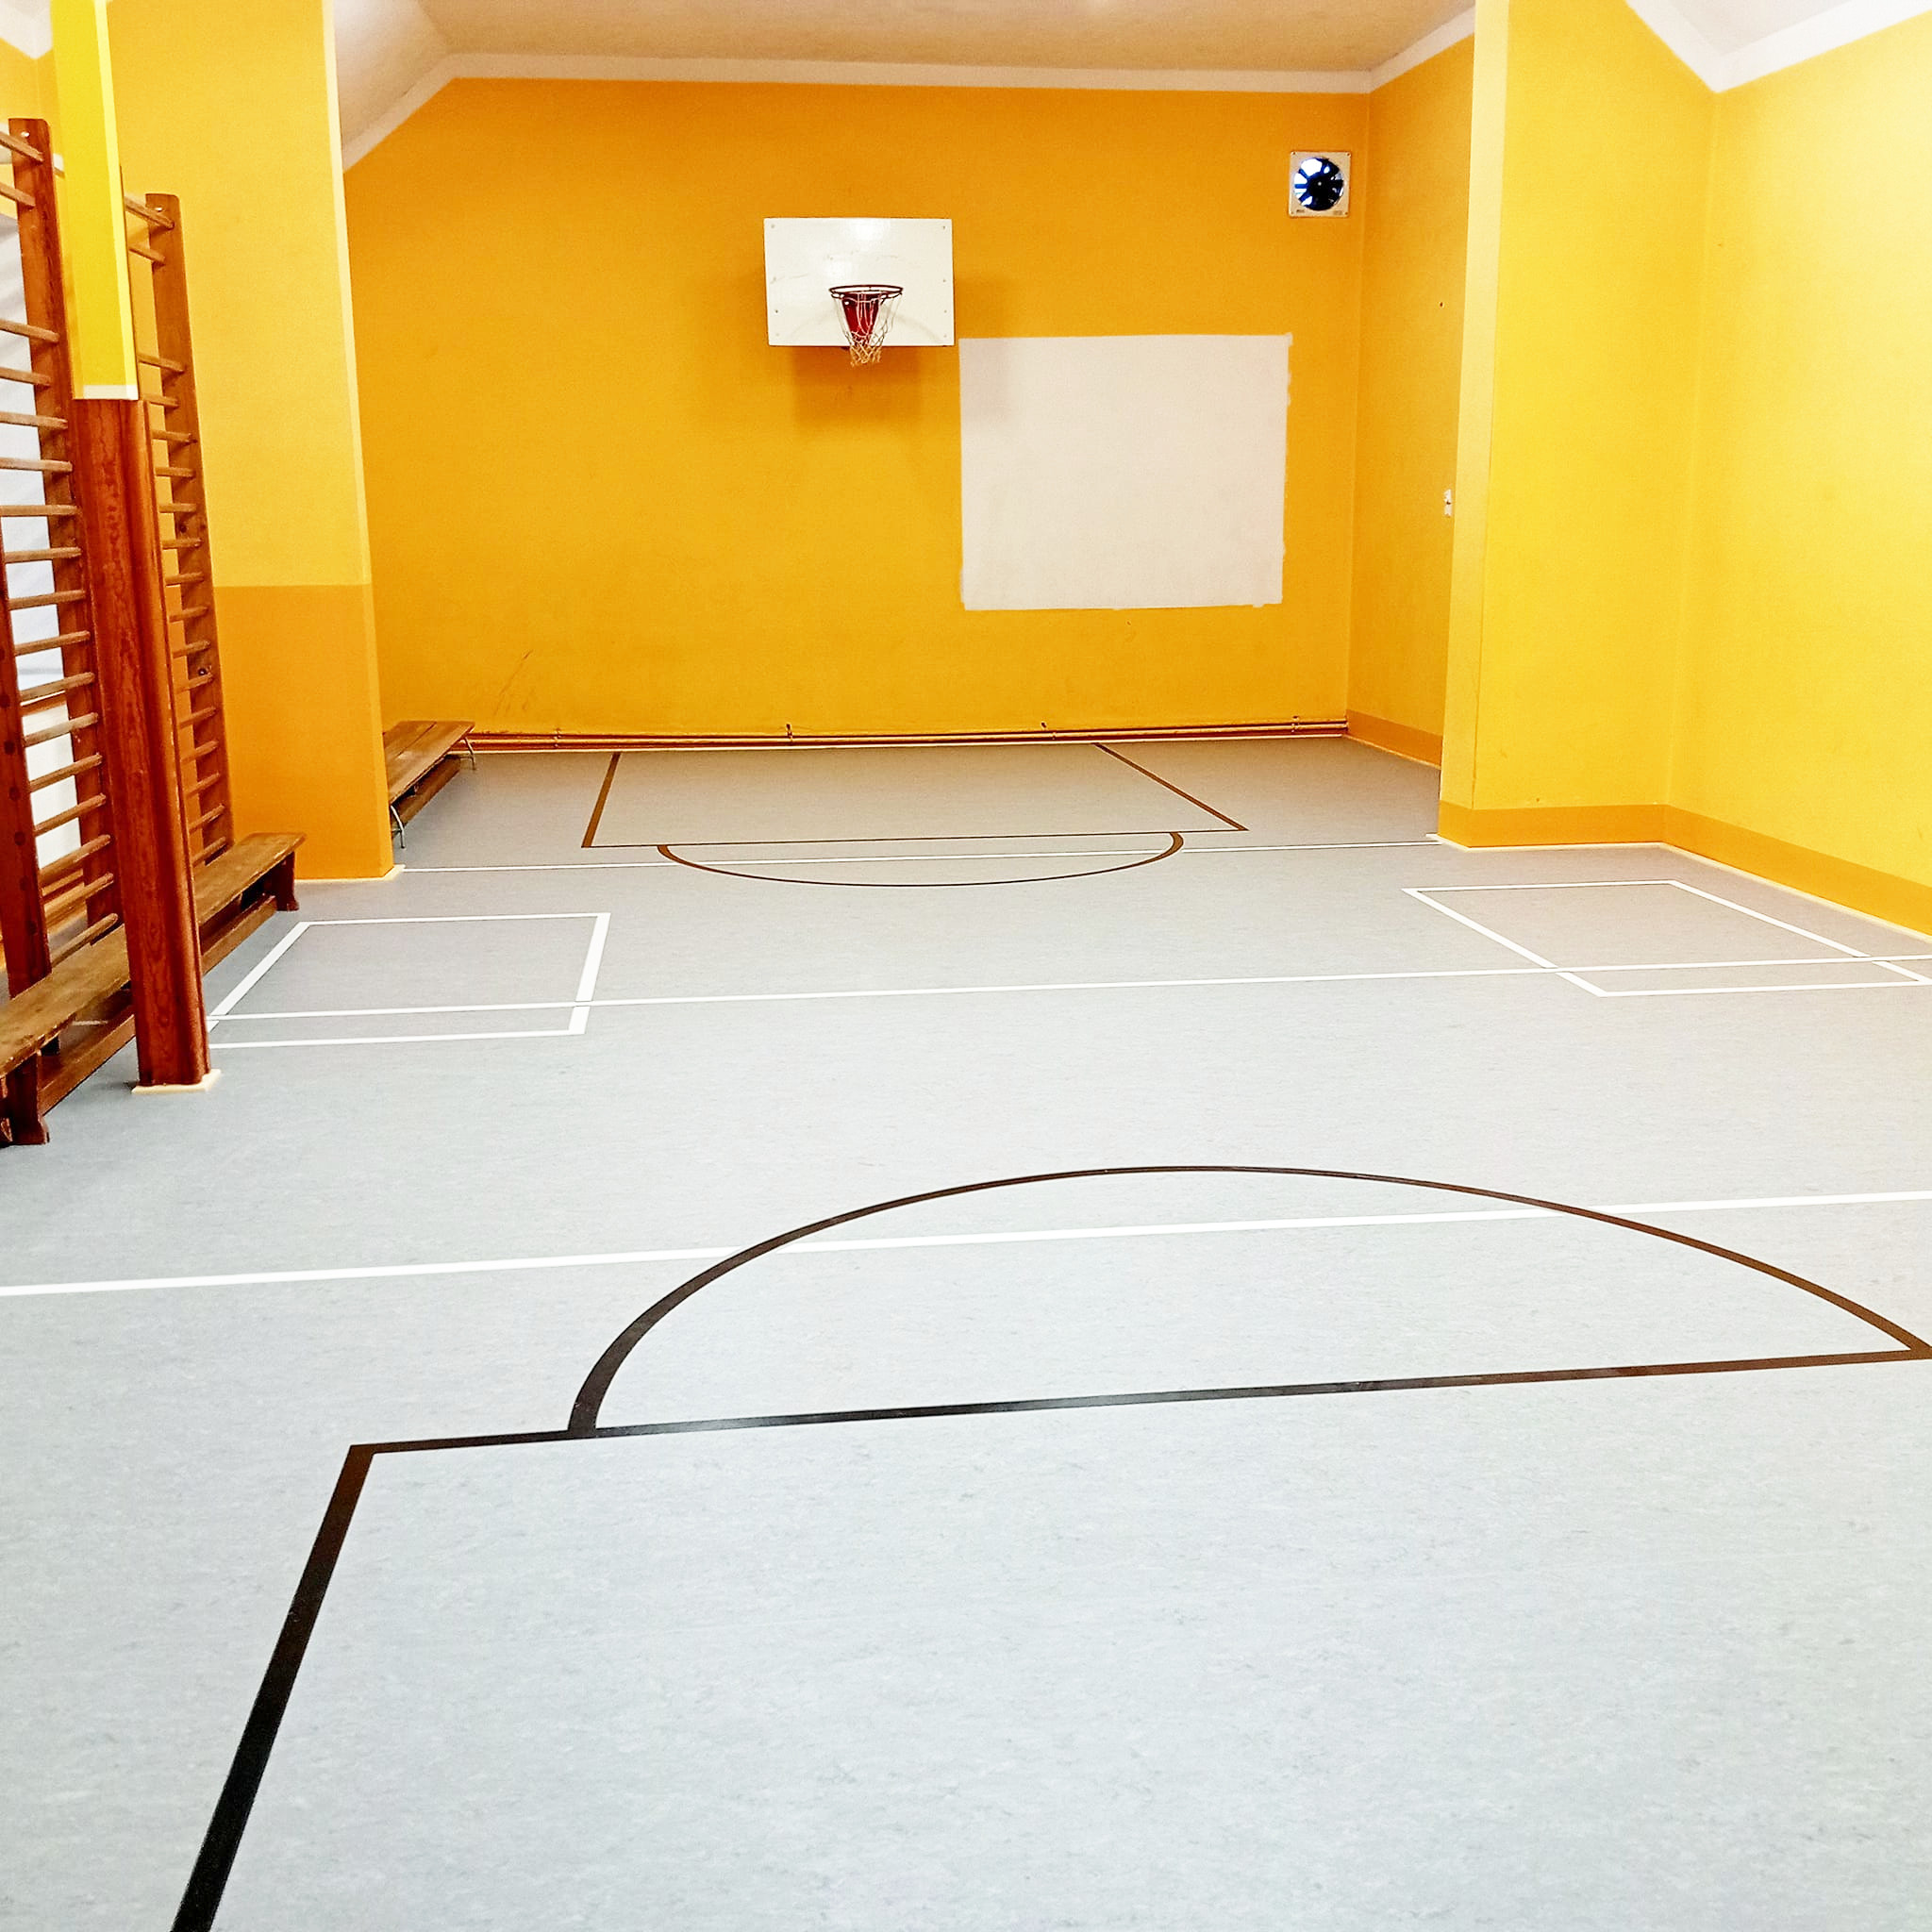 Sala gimnastyczna w Kiszewie ma nową nawierzchnię